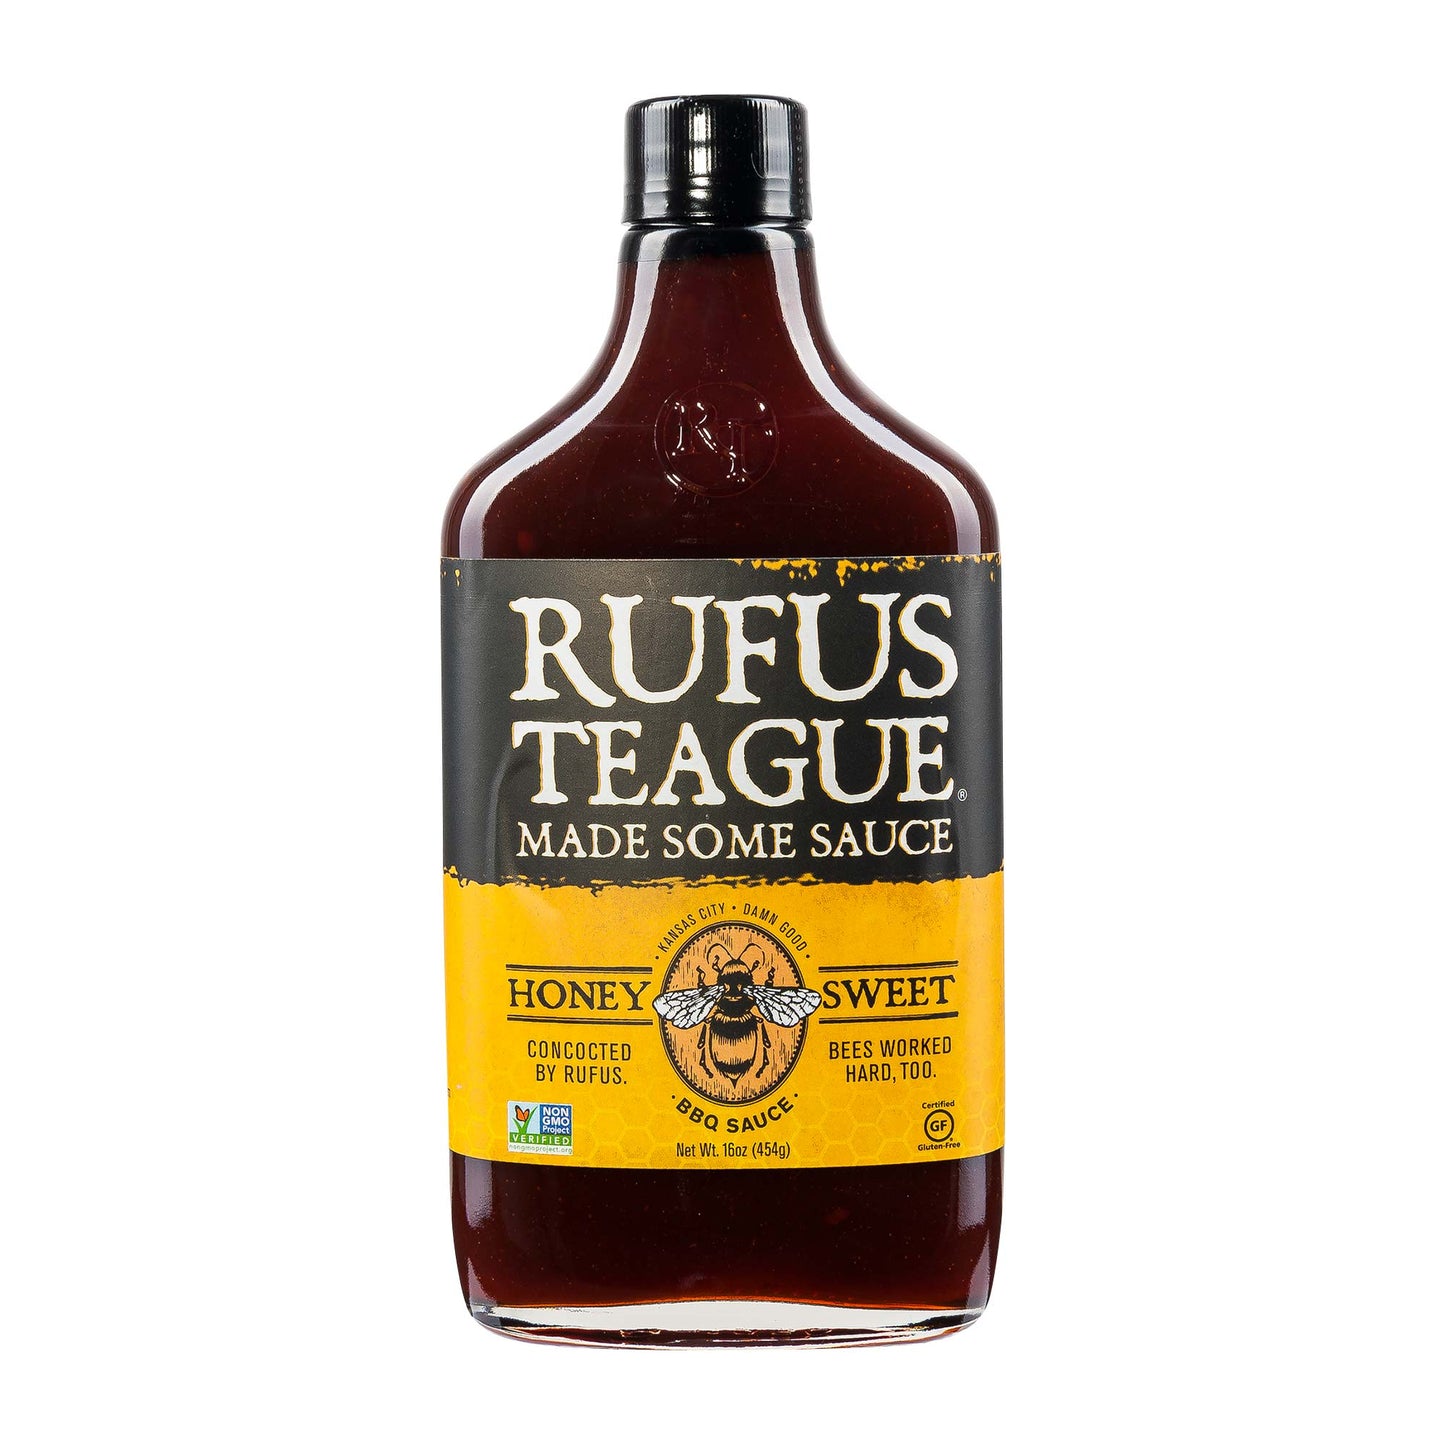 Rufus Teague ‘Honey Sweet’ BBQ Sauce (16 oz)